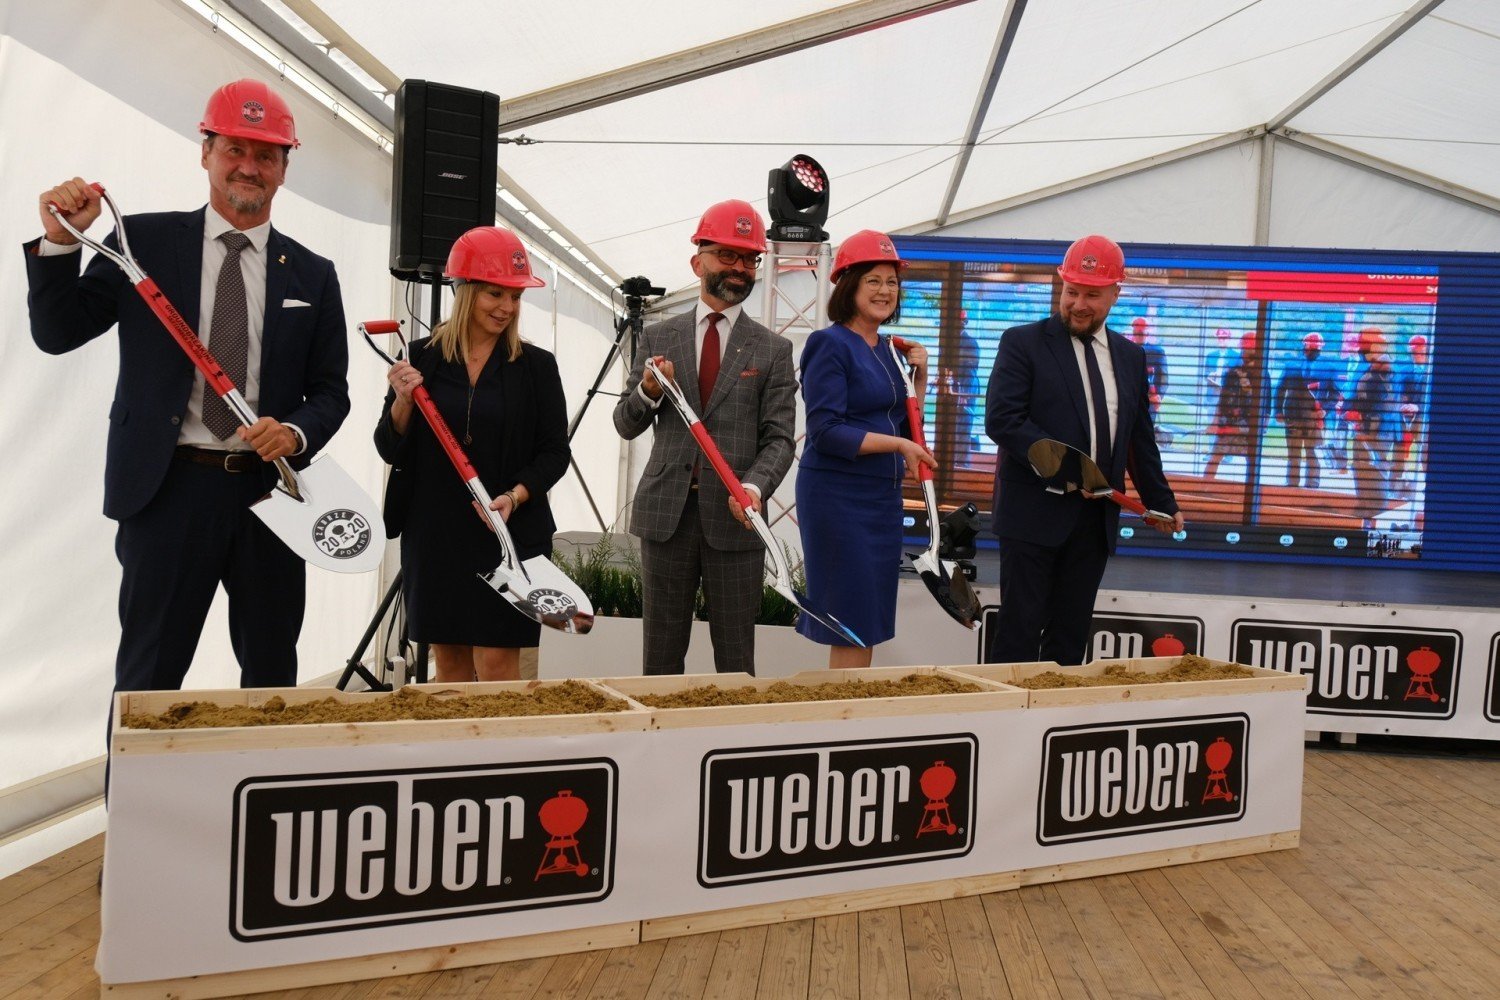 Firma Weber buduje zakład w Zabrzu. To najbardziej znany producent grilli  na świecie. Będzie praca dla 300 ludzi | Zabrze Nasze Miasto